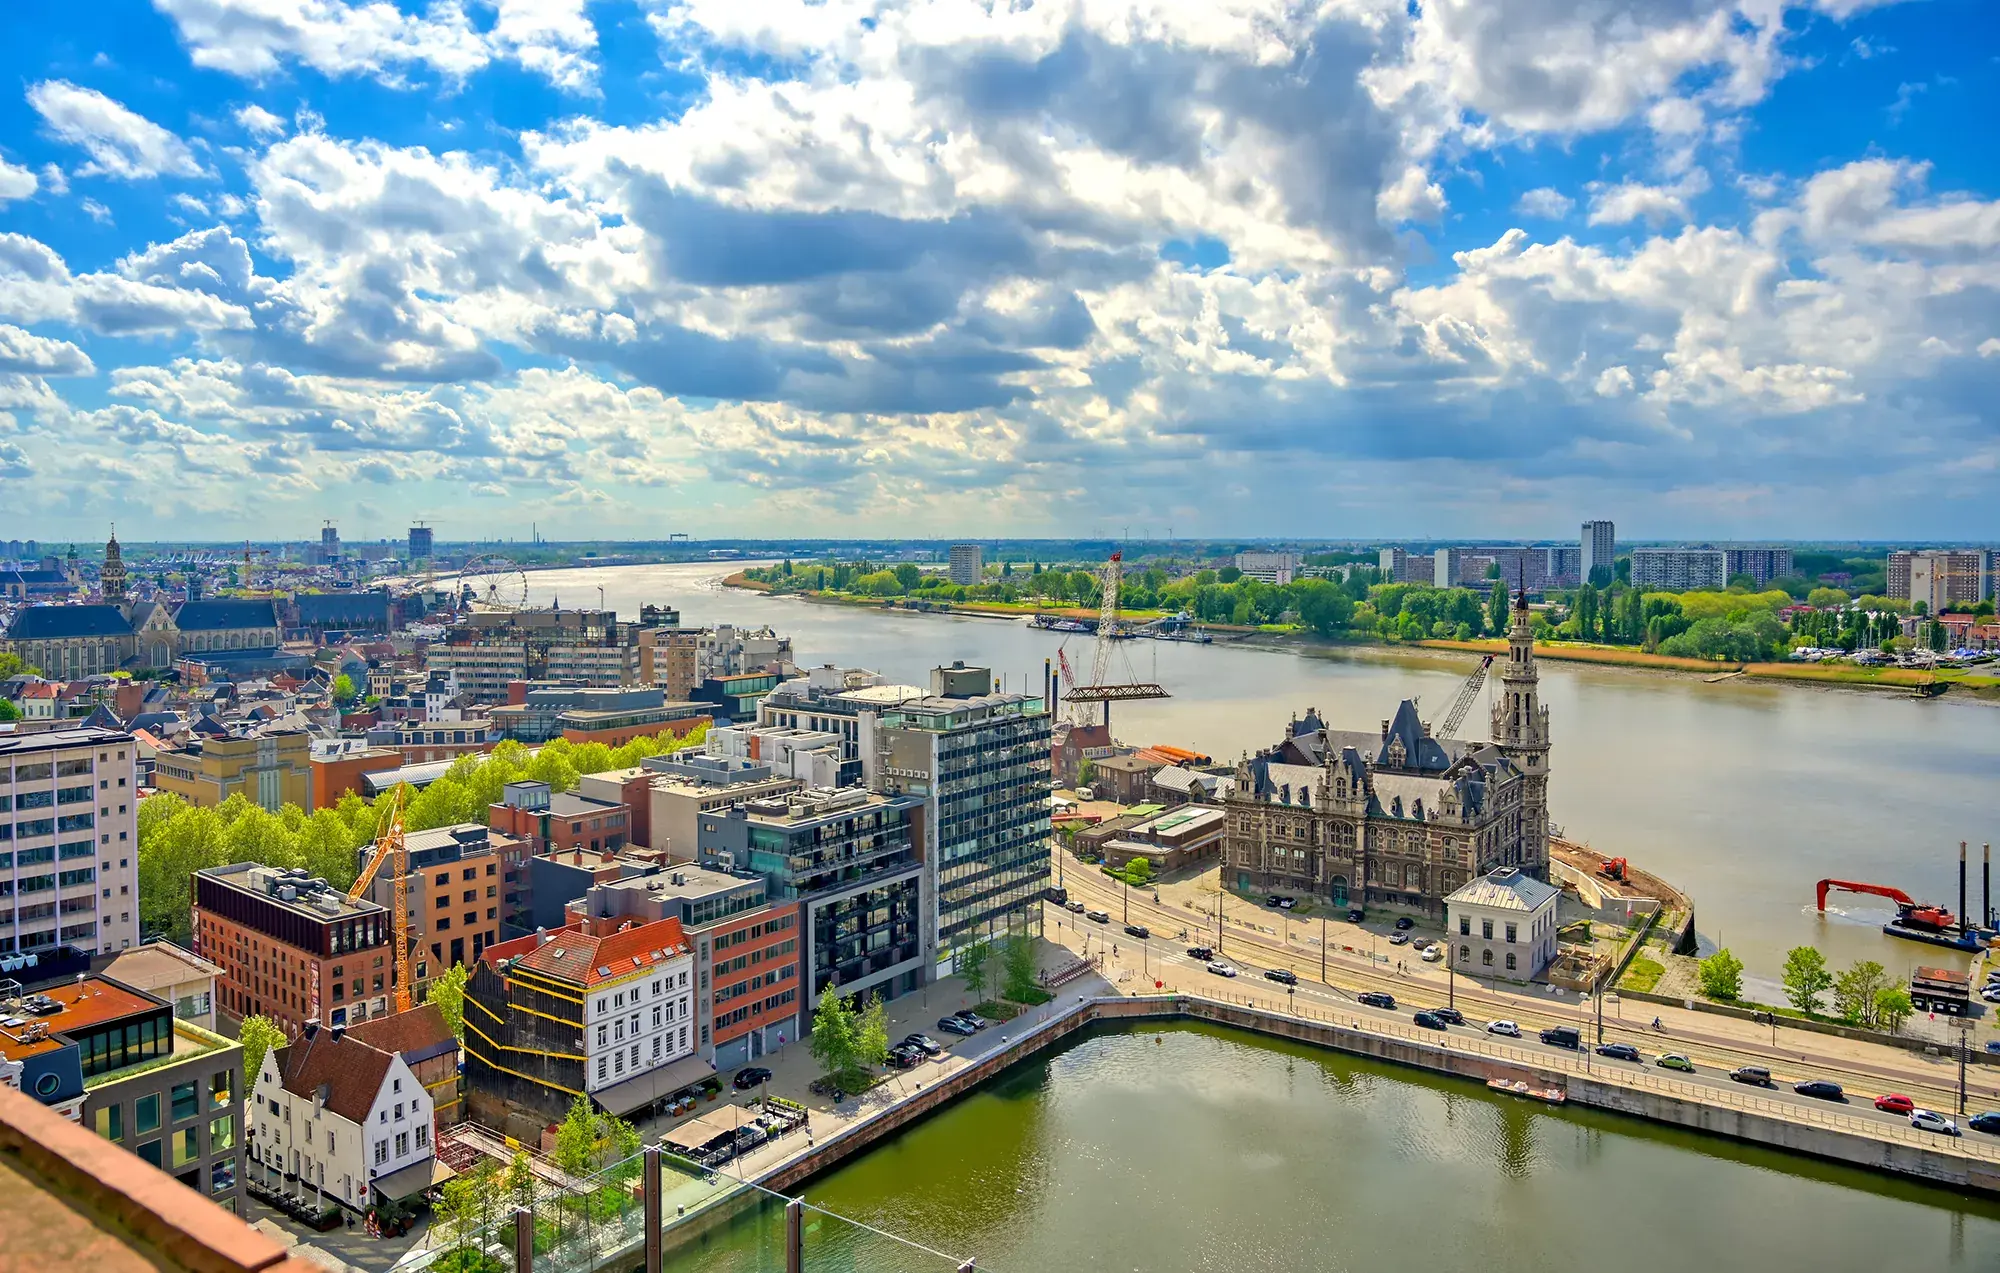 Luftbild mit Blick auf die Stadt Antwerpen mit Hafen - Städtereise ins NH Antwerpen Hotel